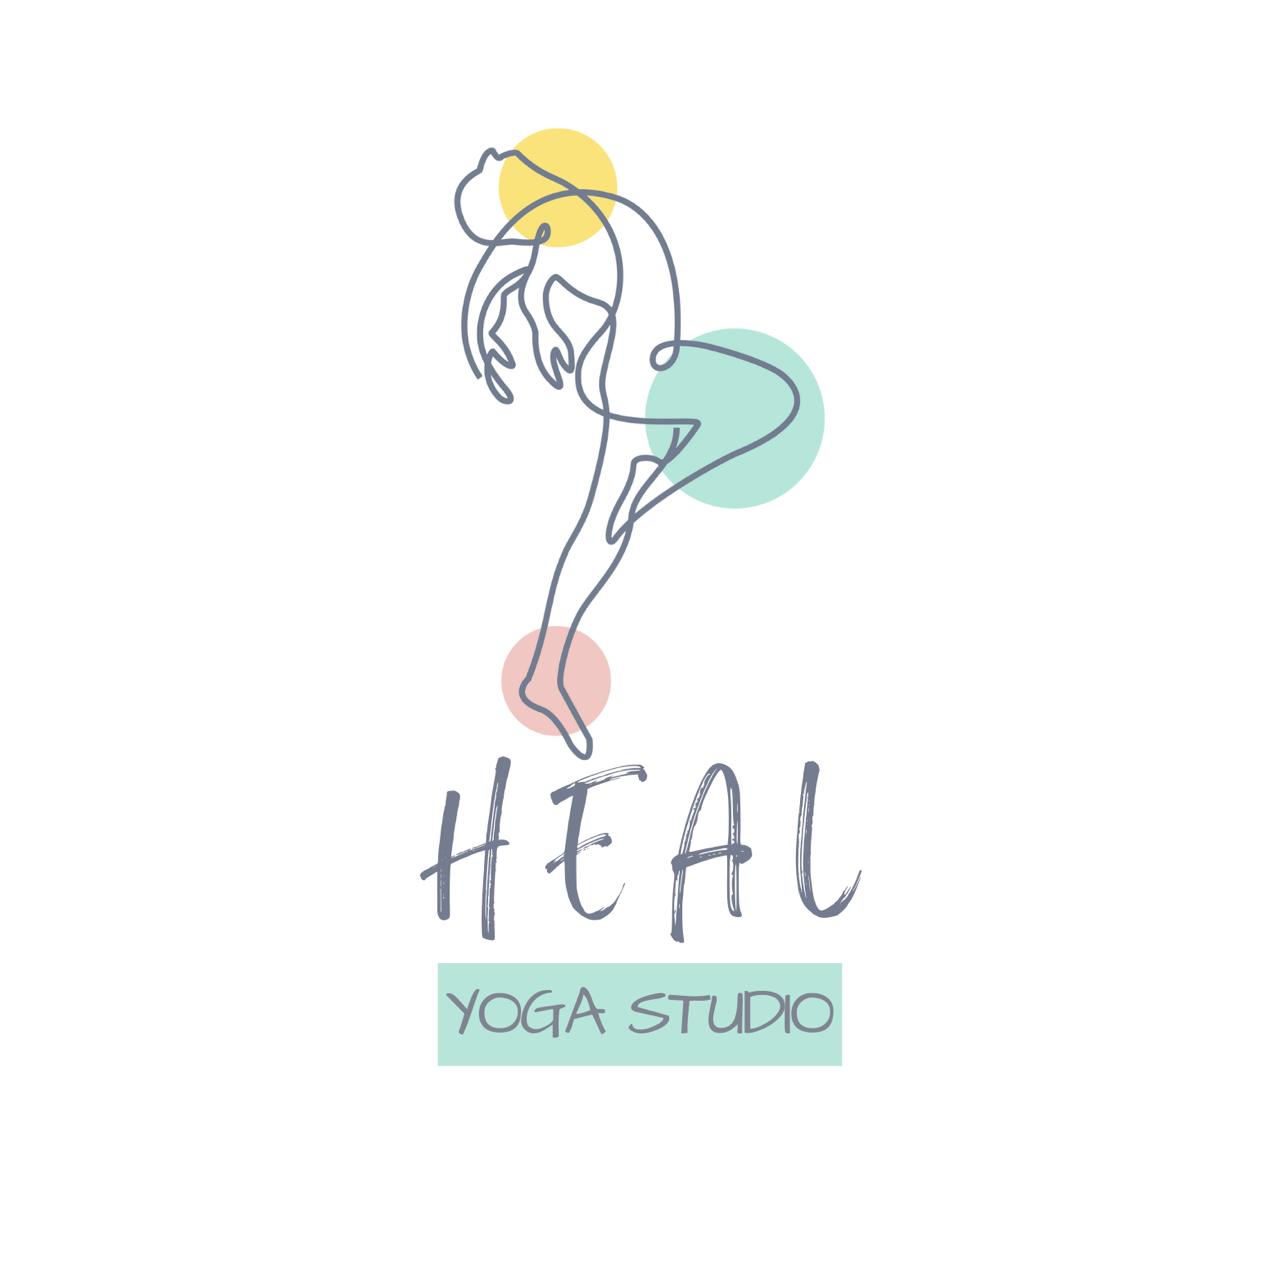 HEAL Yoga Studio